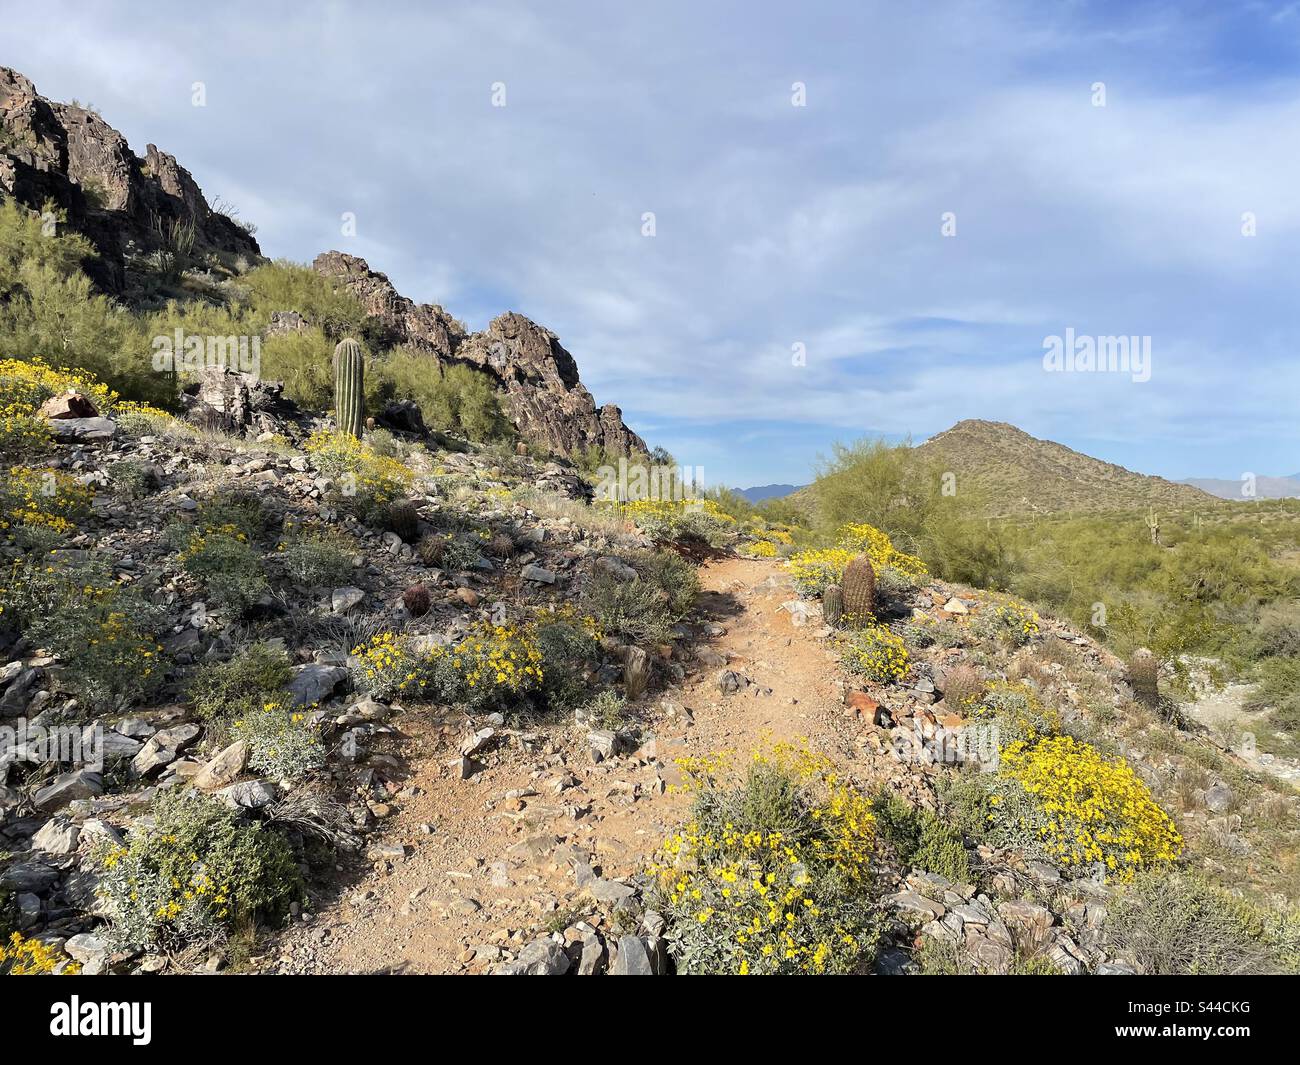 Réserve des montagnes de Phoenix, piste de randonnée de 40th rues, sentier de randonnée et de vélo, Bush fragile aux fleurs jaunes, désert de Sonoran, Arizona Banque D'Images